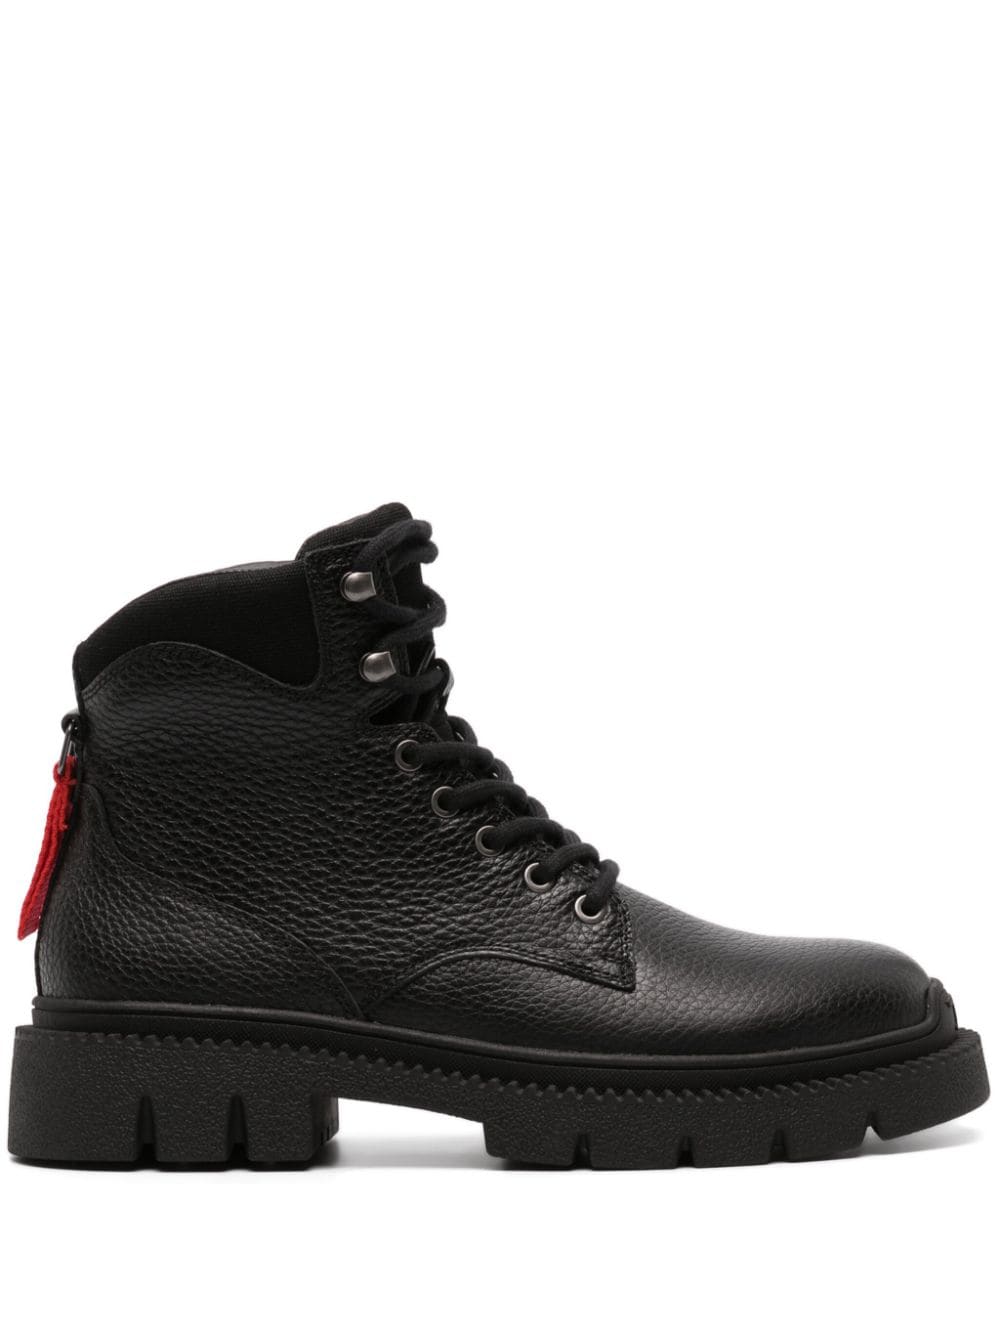 Diesel D-Troit leather boots - Black von Diesel